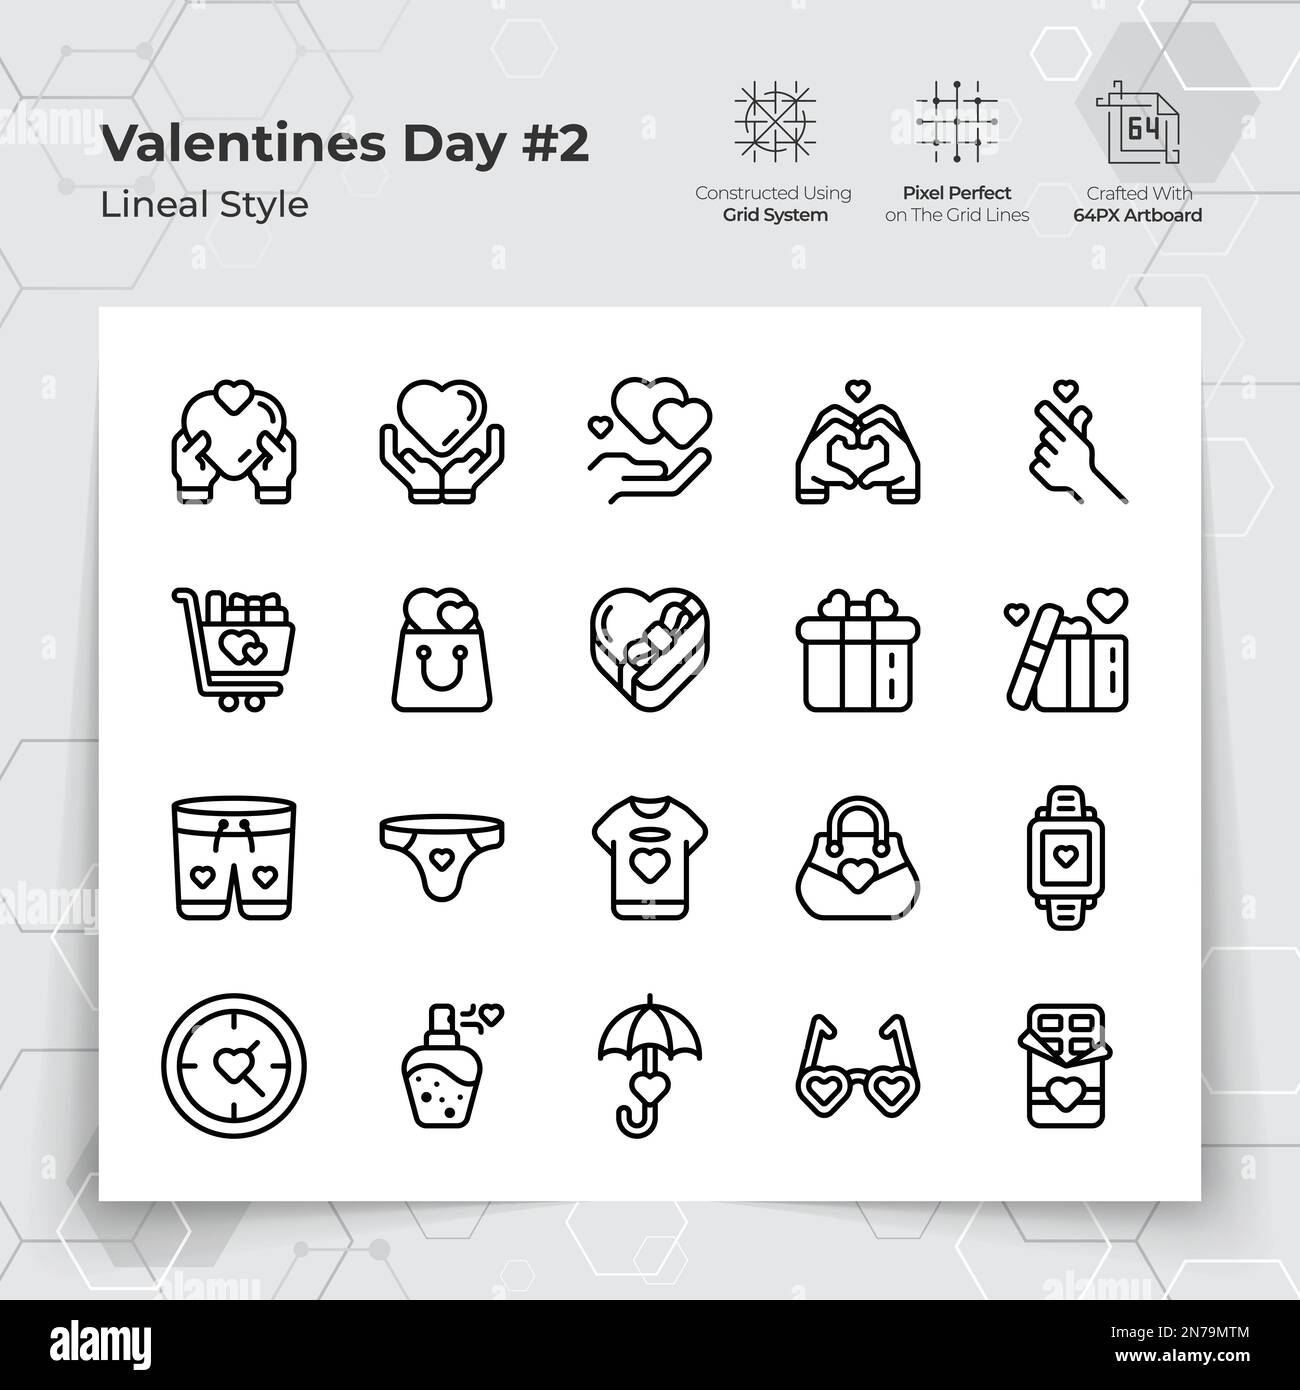 Valentinstag-Ikone mit schwarzer Linie auf Geschenken und „Verlieben“-Motiven. Eine Sammlung von Liebes- und Romantik-Vektorsymbolen für Valentinstag Cel Stock Vektor